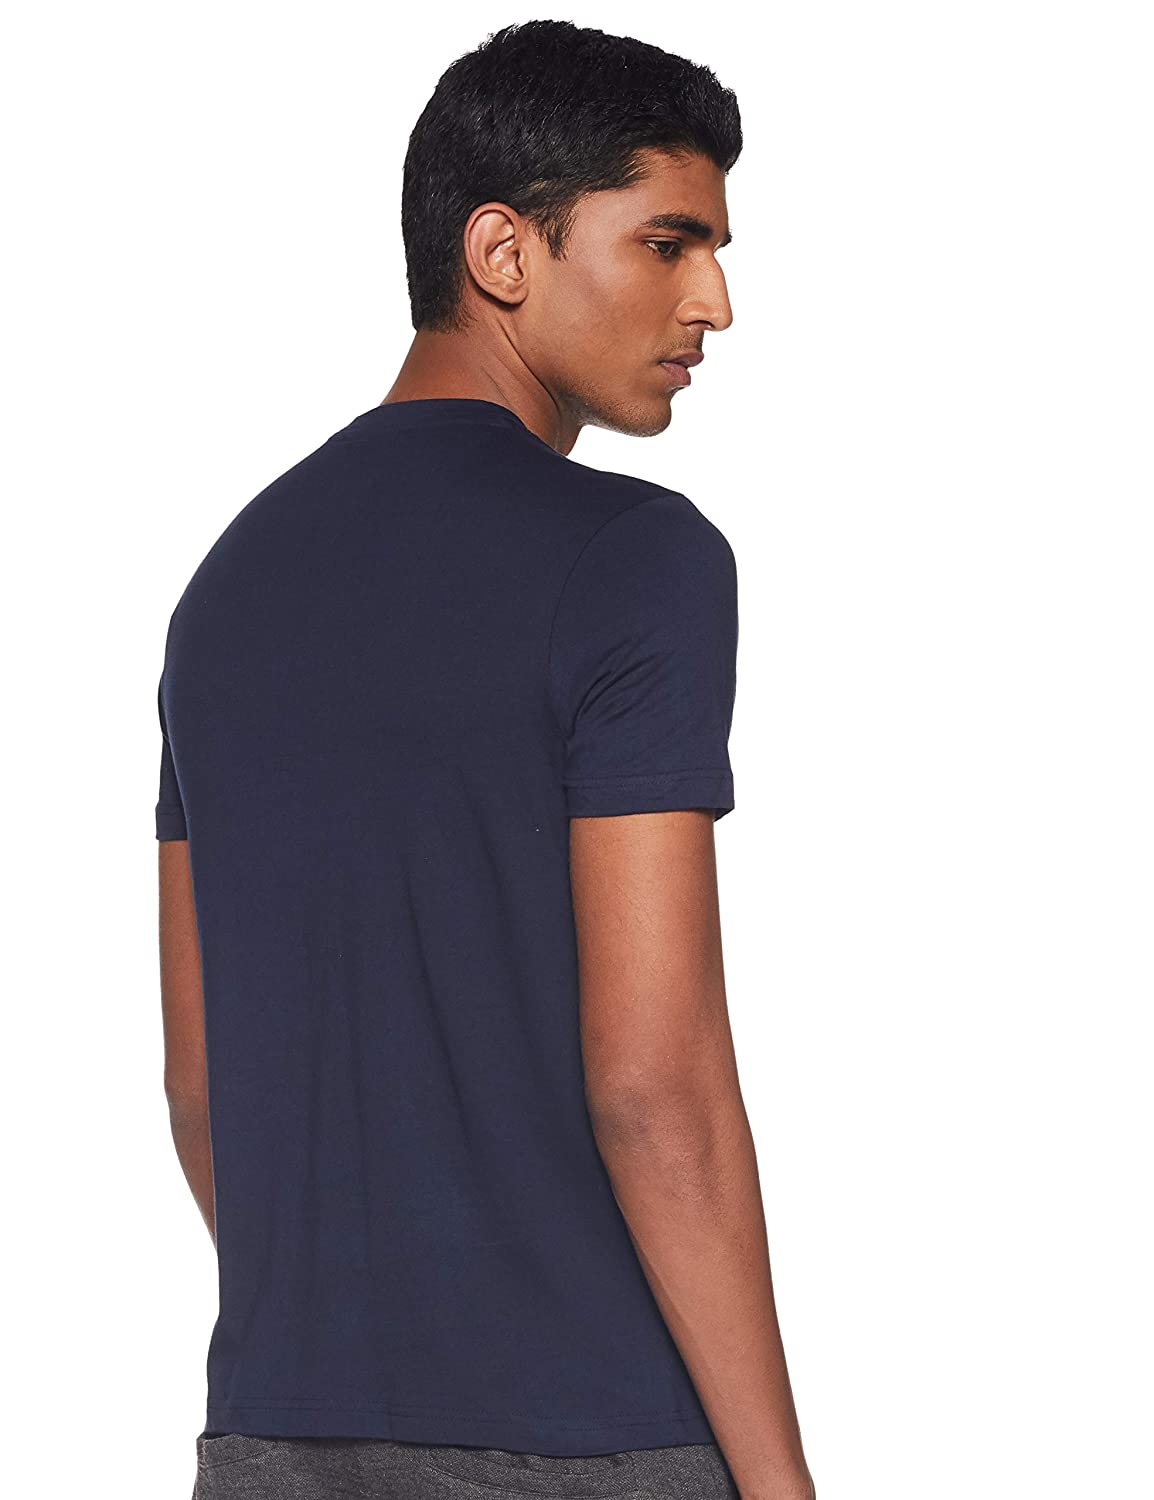 US Polo. Men's Dark Blue Solid Regular Fit T-Shirt - Stilento